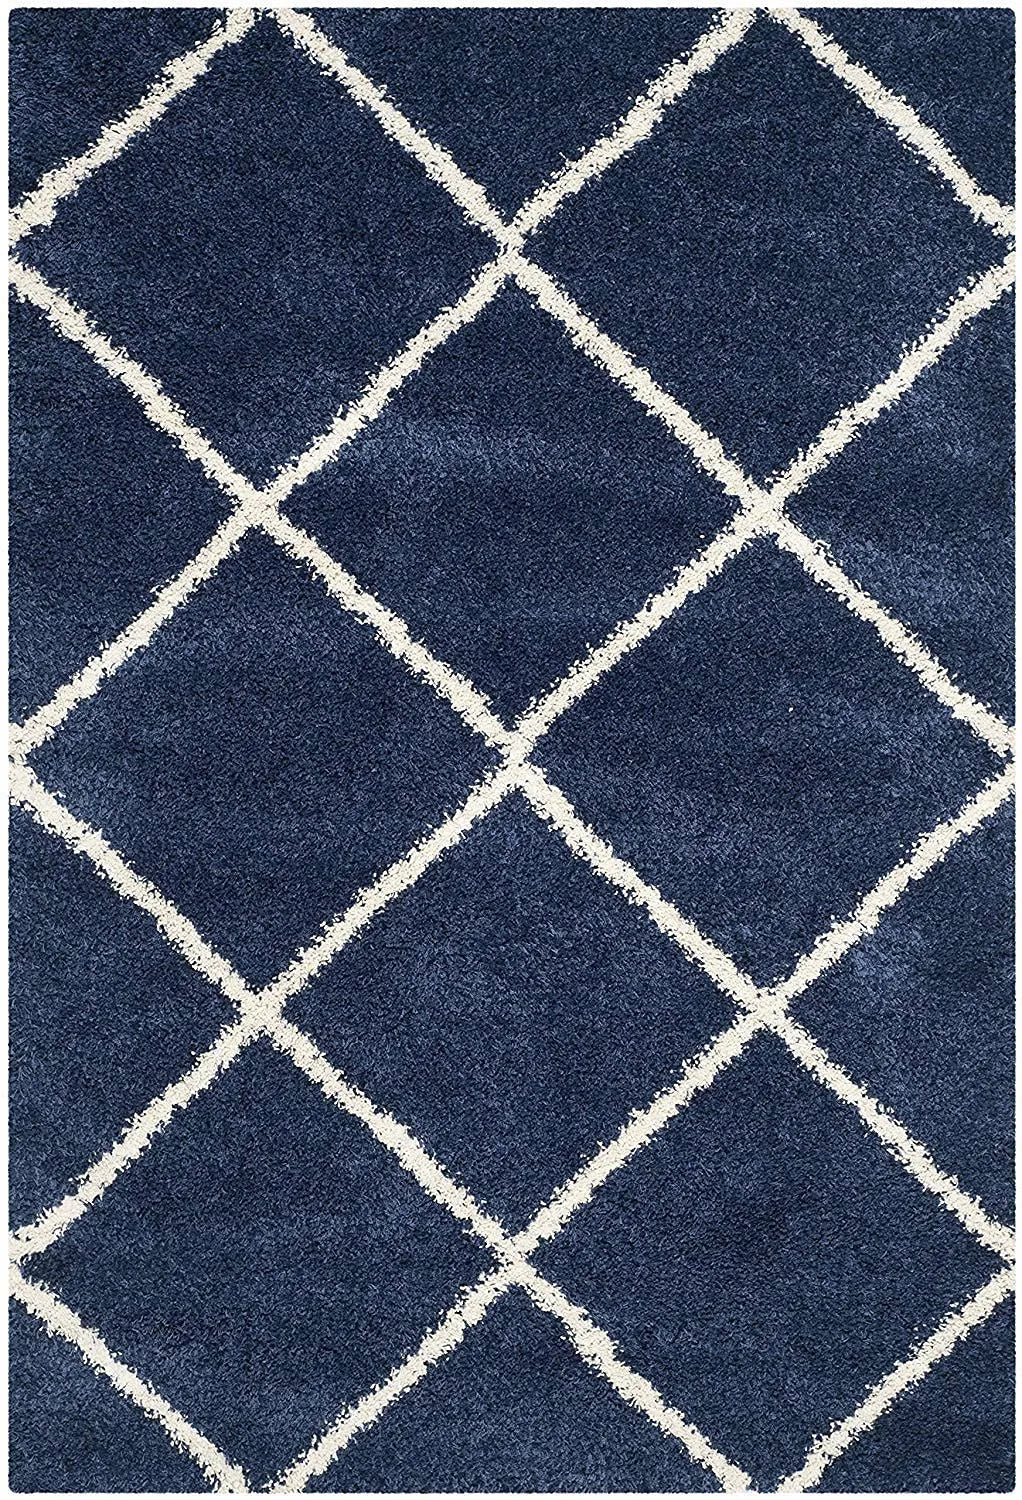 Avioni Home Atlas Collection – Microfiber Moroccan Style Lattice Carpets – Blue and White